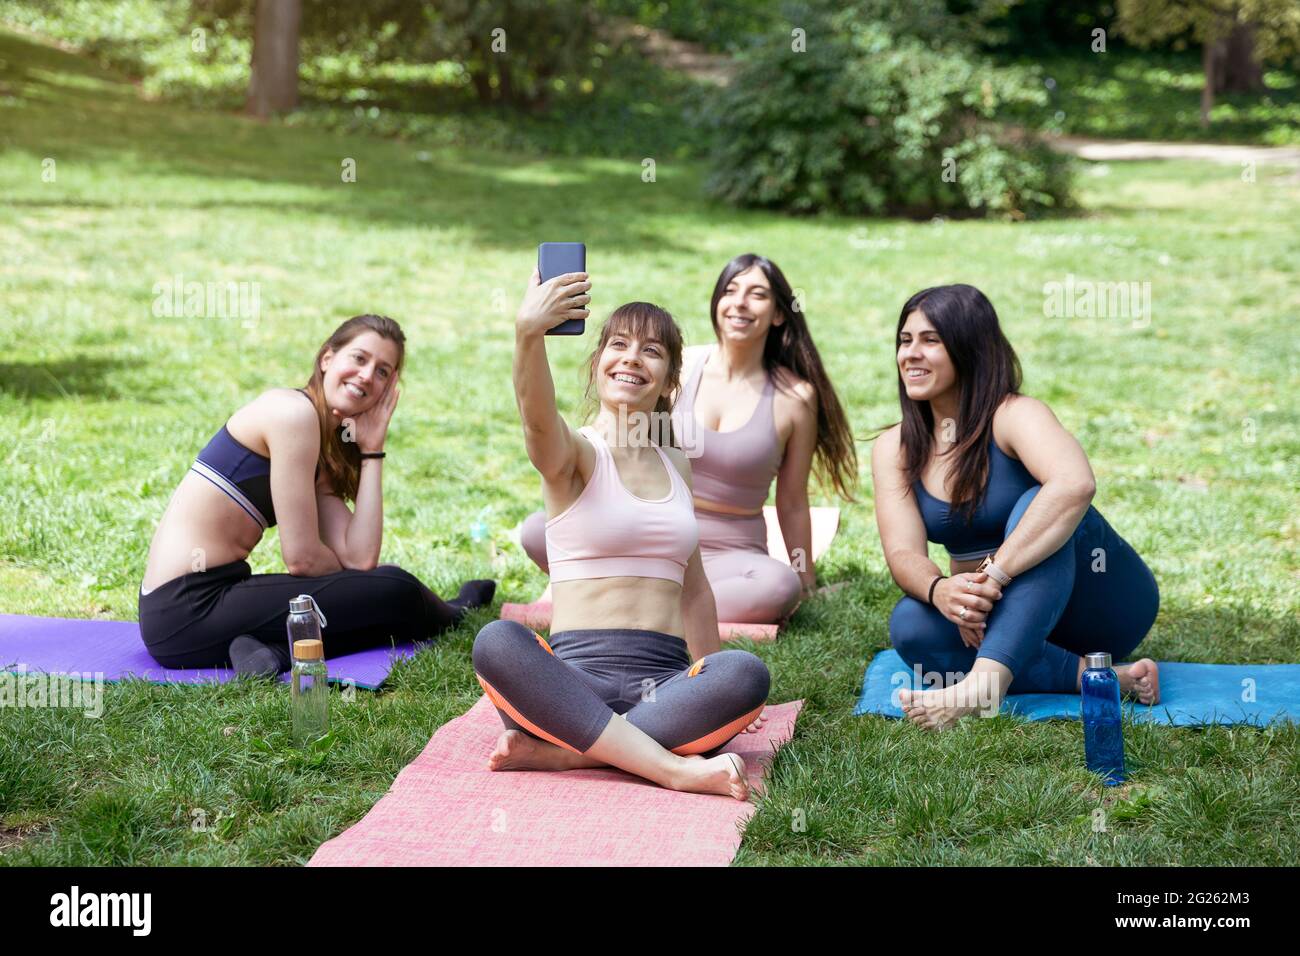 Eine Gruppe junger kaukasischer Frauen, die während eines Yoga-Kurses im Freien ein Foto machen. Platz für Text. Stockfoto